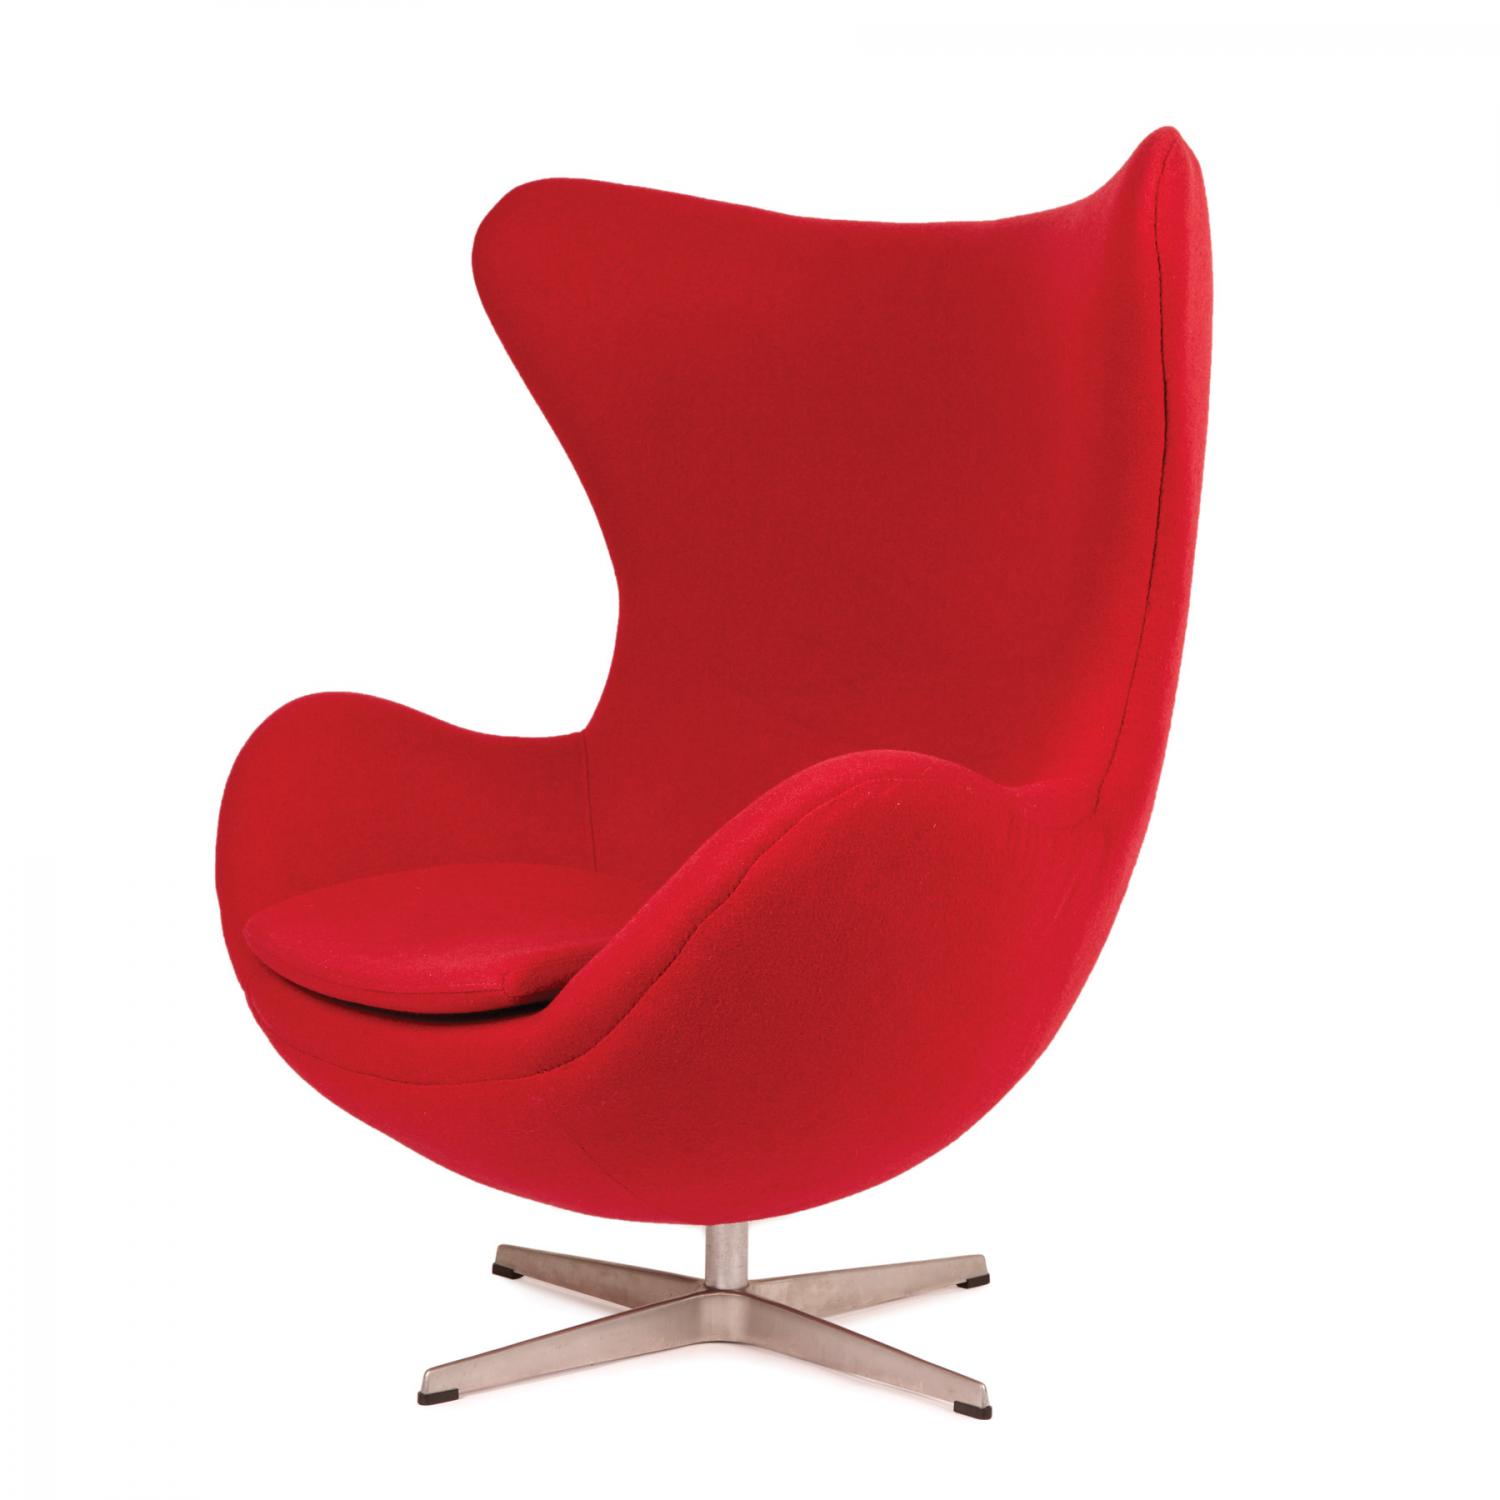 Arne Jacobsen Egg Chair - Price Estimate: $3000 - $5000